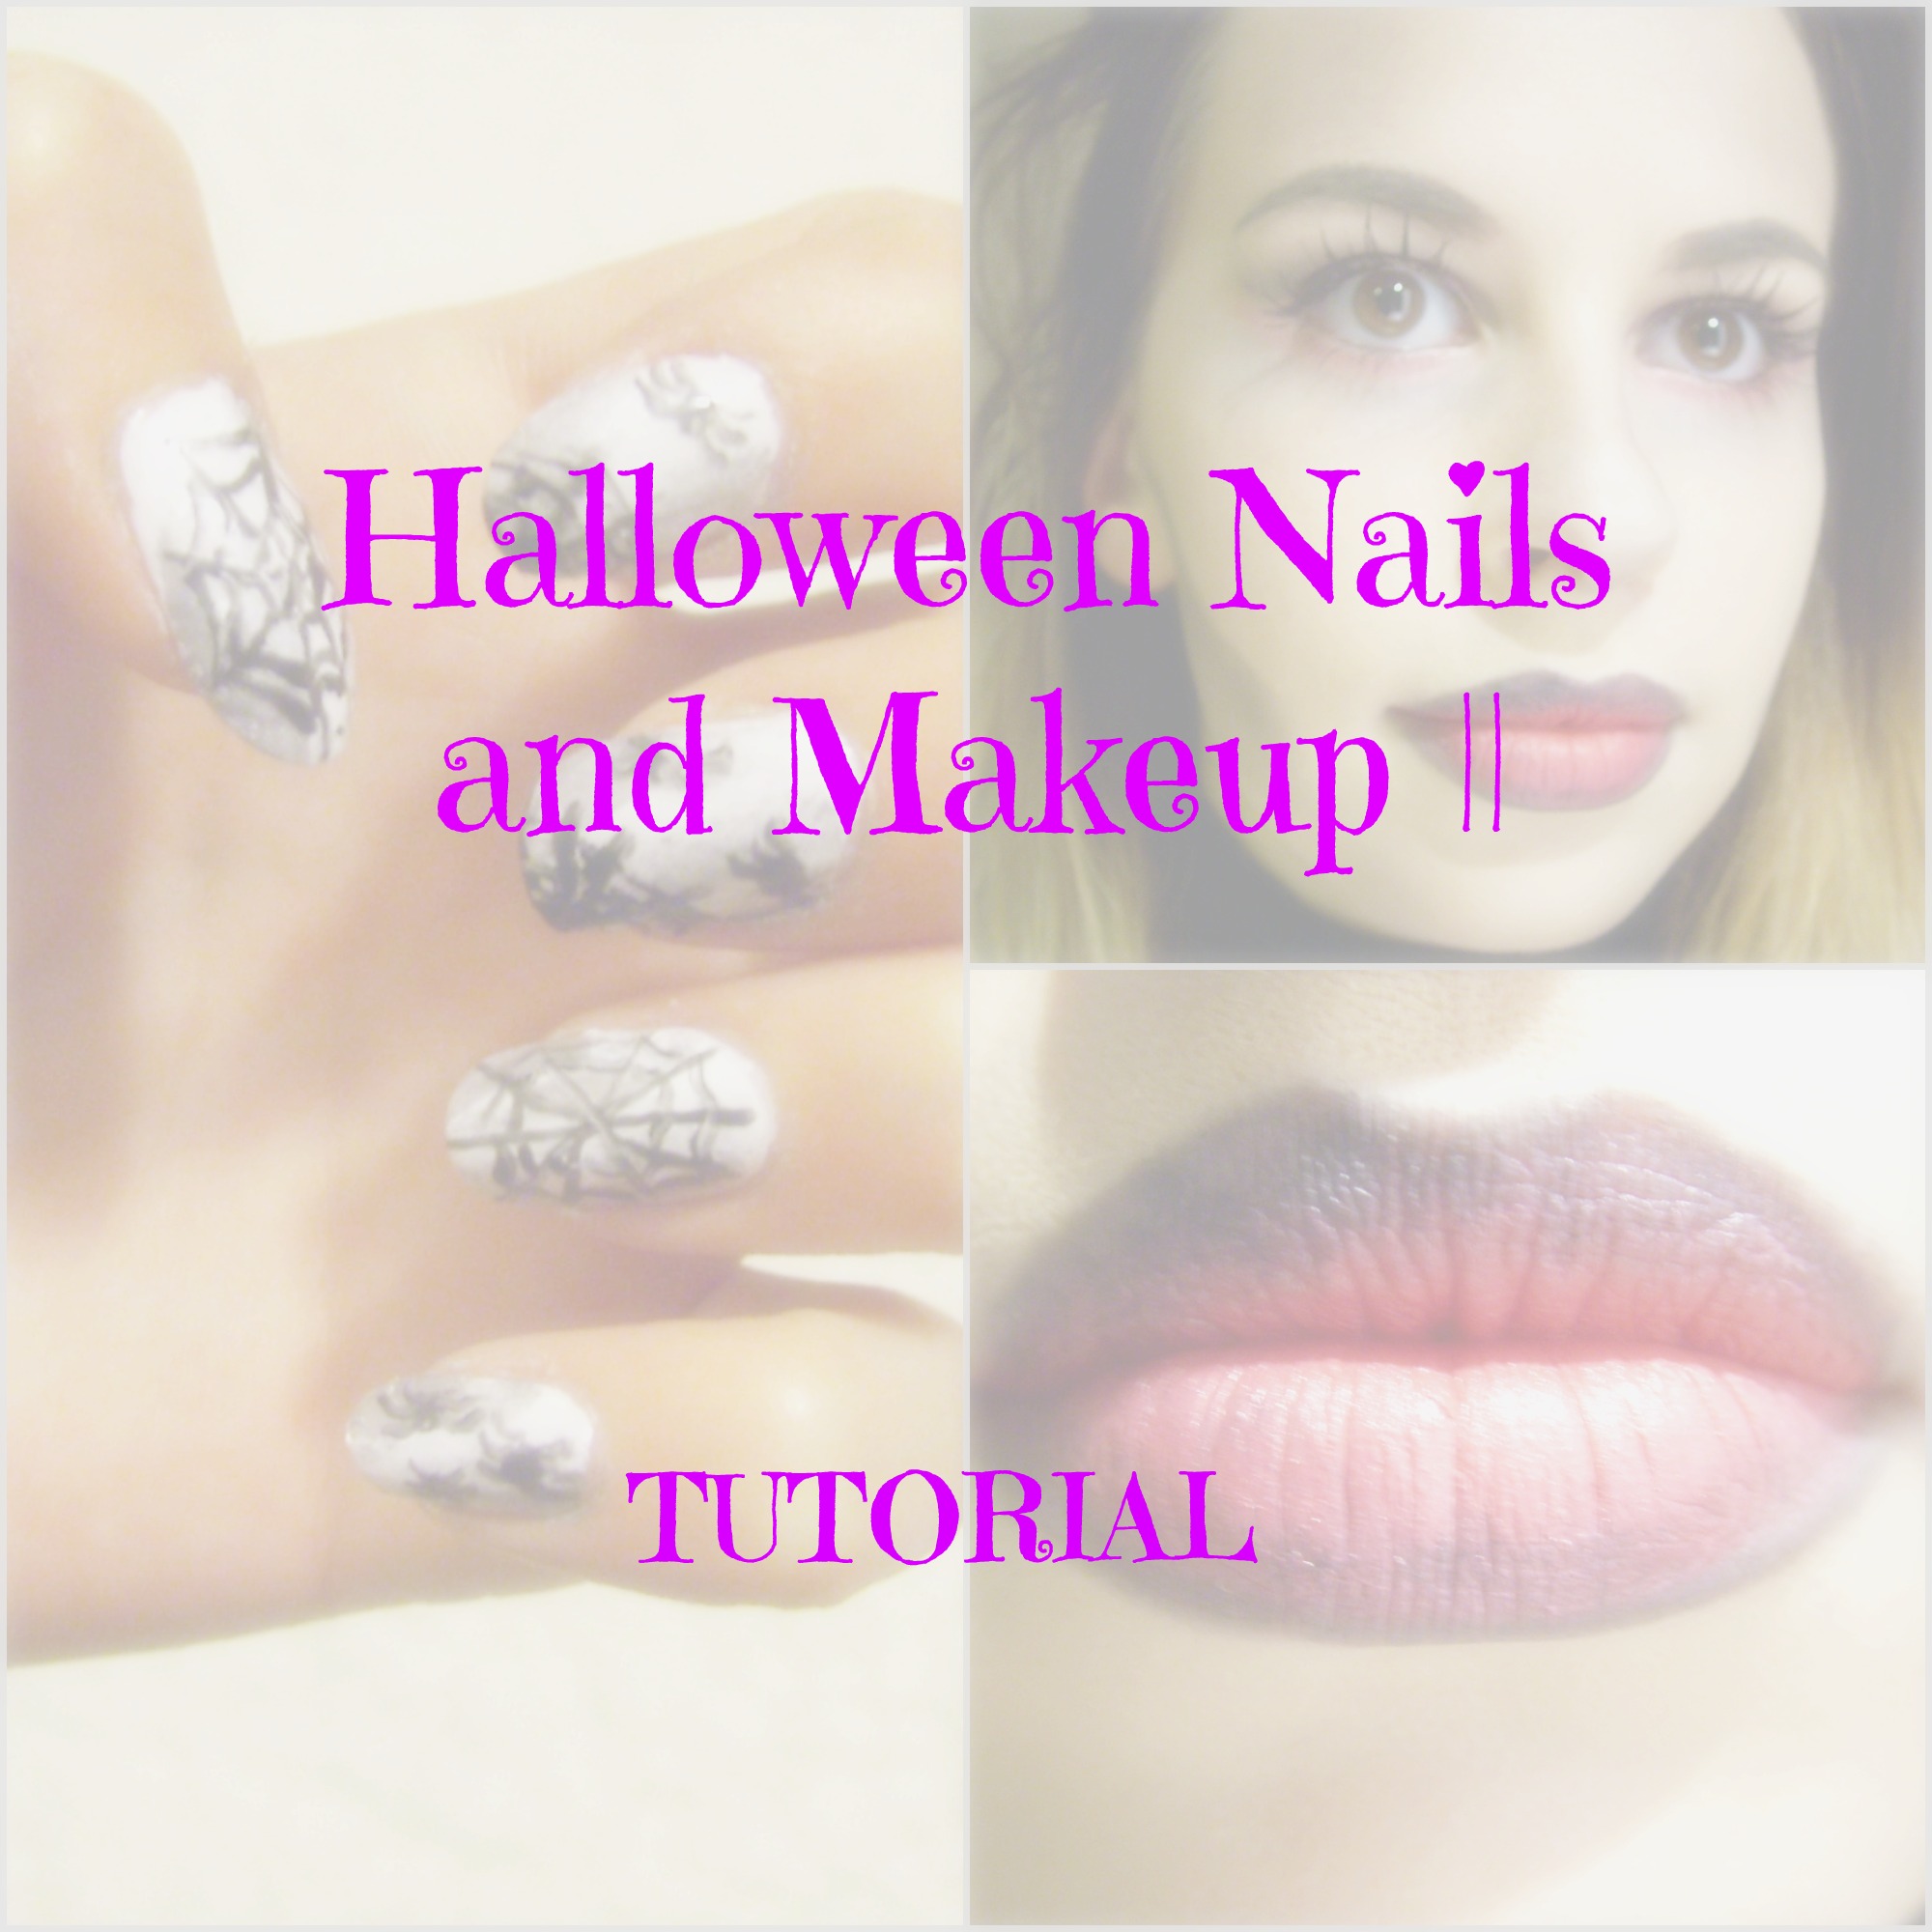 Halloween Nails and Makeup || TUTORIAL